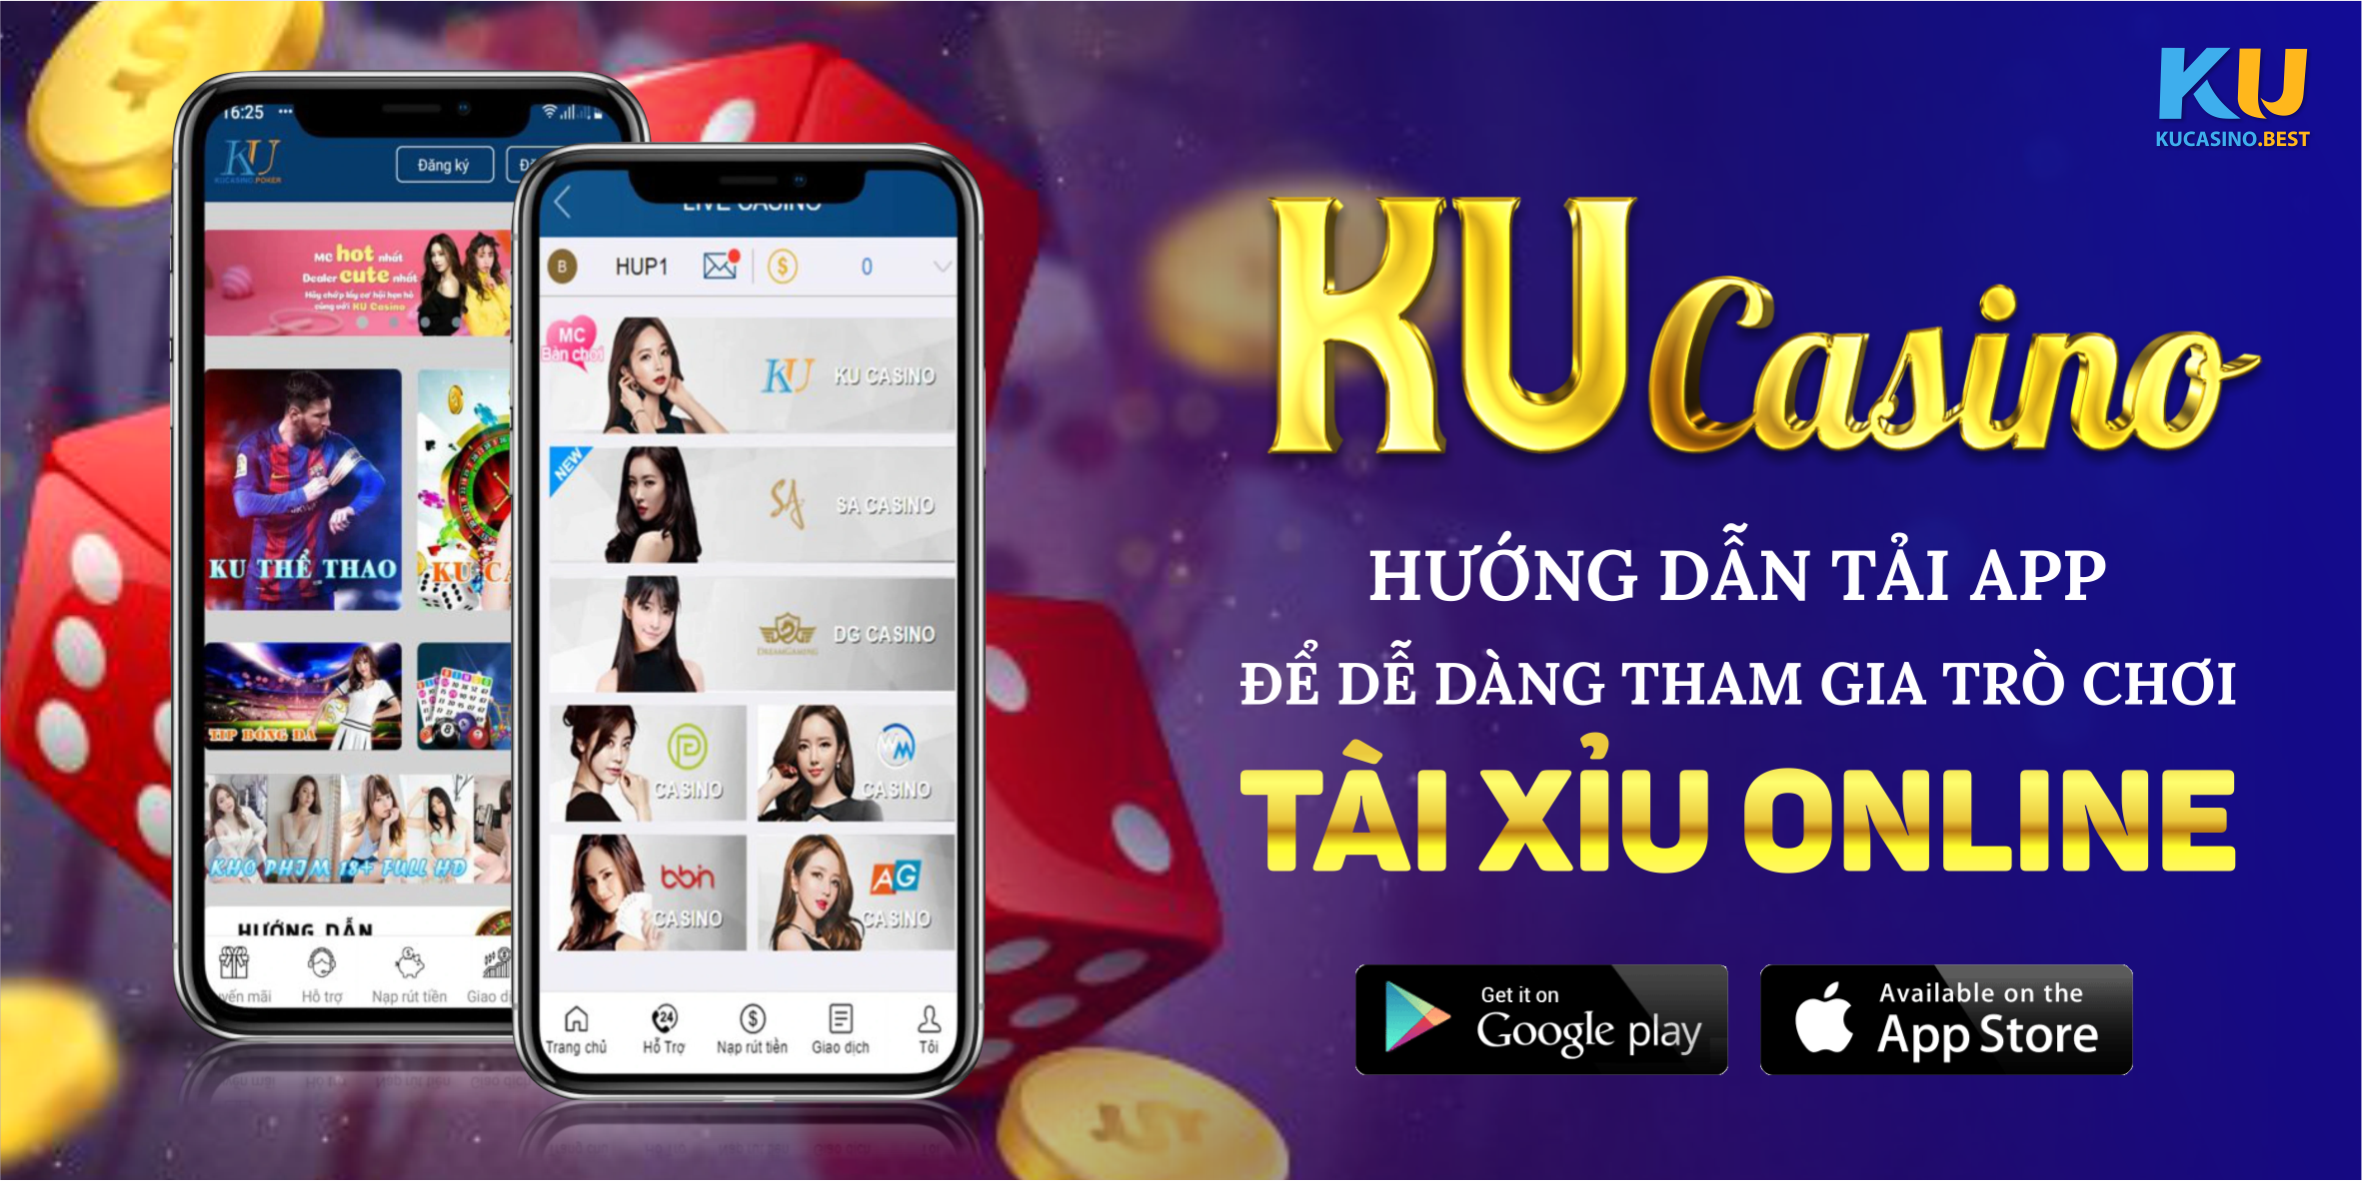 Hướng dẫn tải App Ku Casino để dễ dàng tham gia trò chơi tài xỉu online